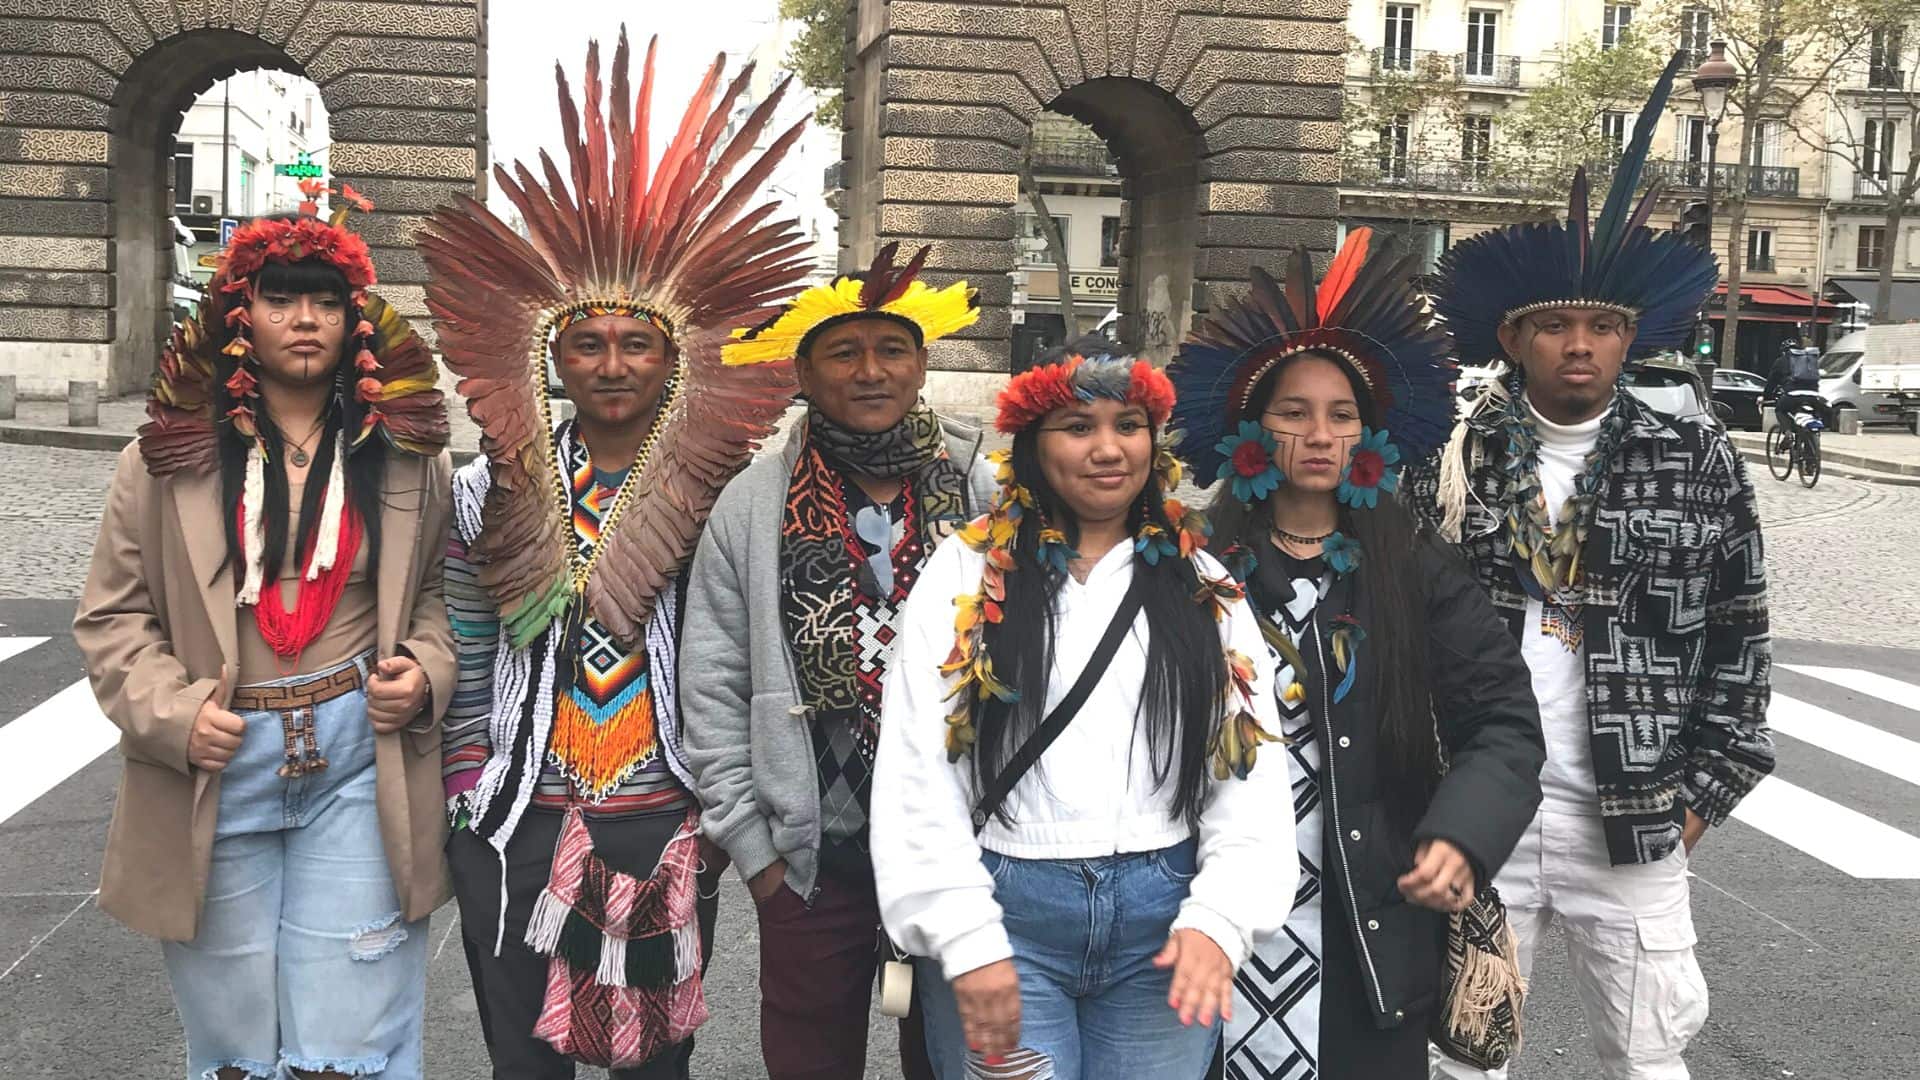 Ces autochtones utilisent l’influence pour éveiller les consciences